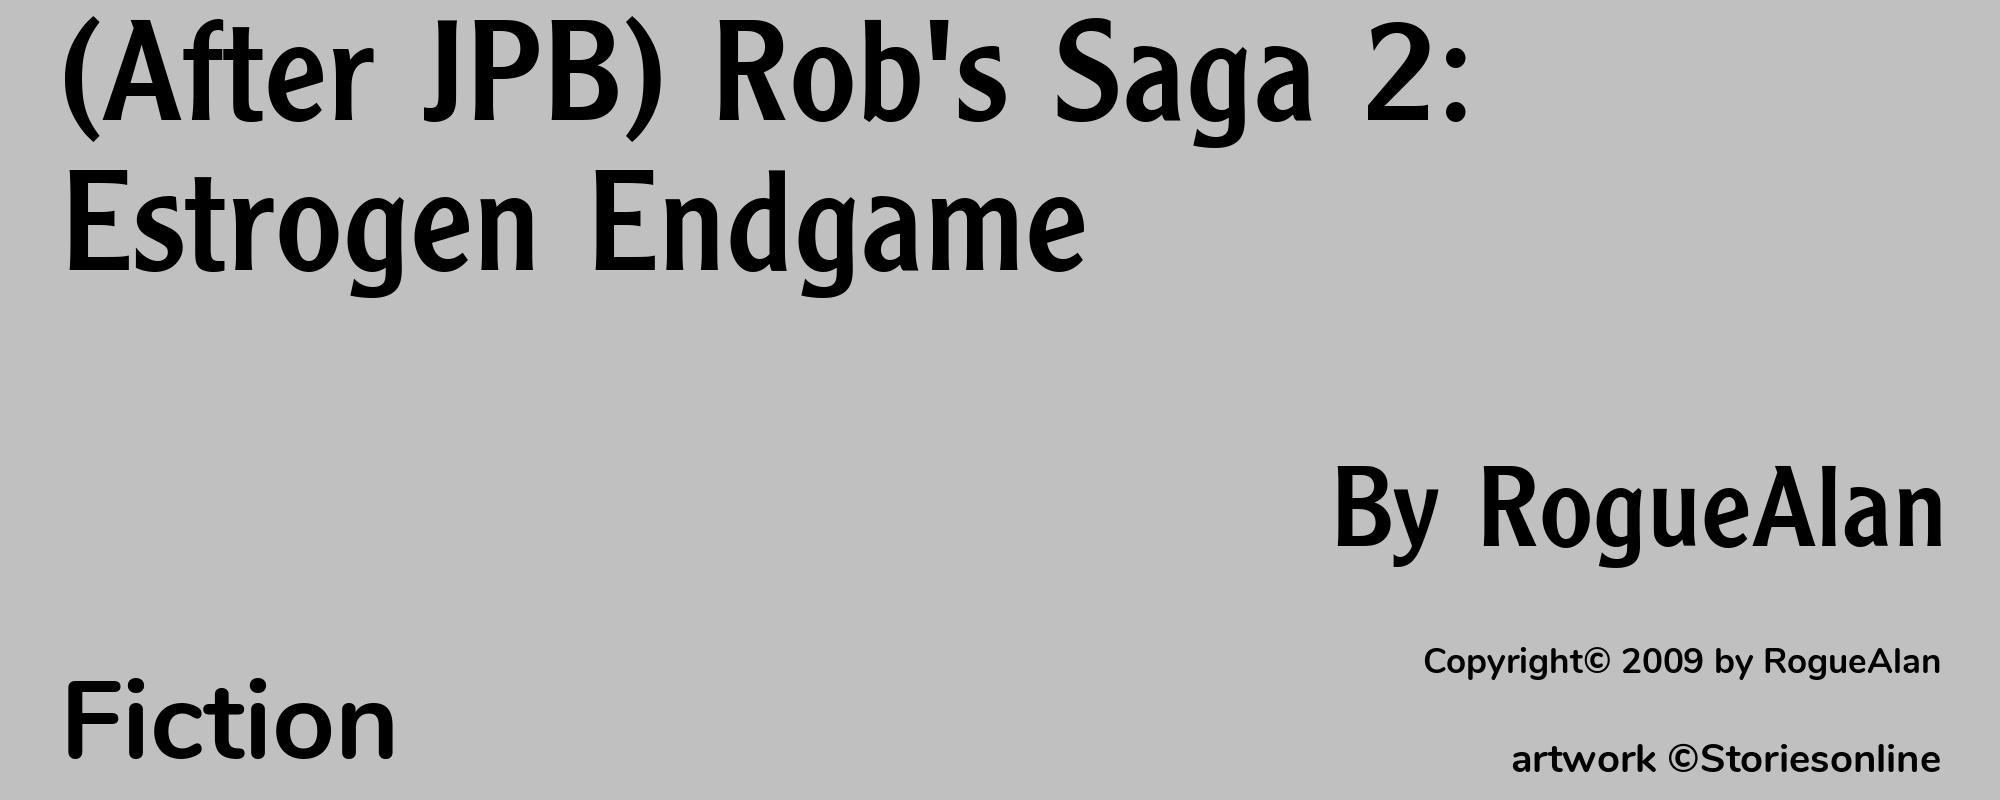 (After JPB) Rob's Saga 2: Estrogen Endgame - Cover